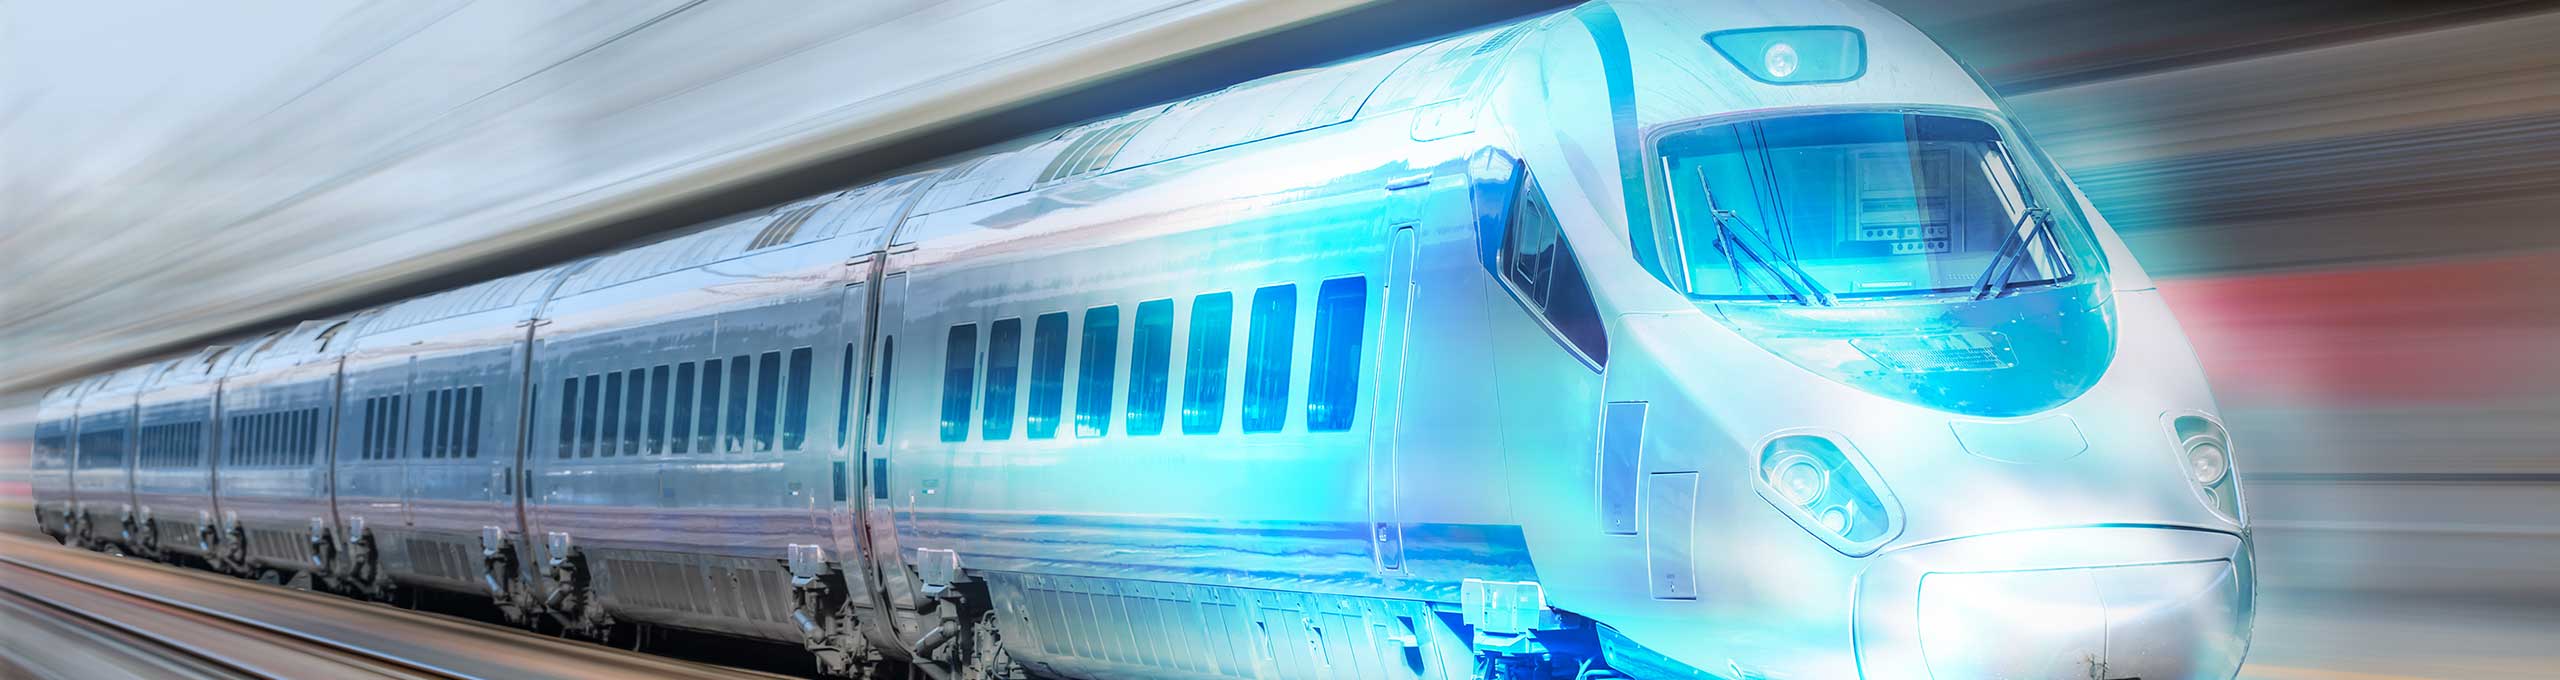 Stilisiertes Bild eines Hochgeschwindigkeitszugs, der über die Gleise in Richtung Zukunft rast